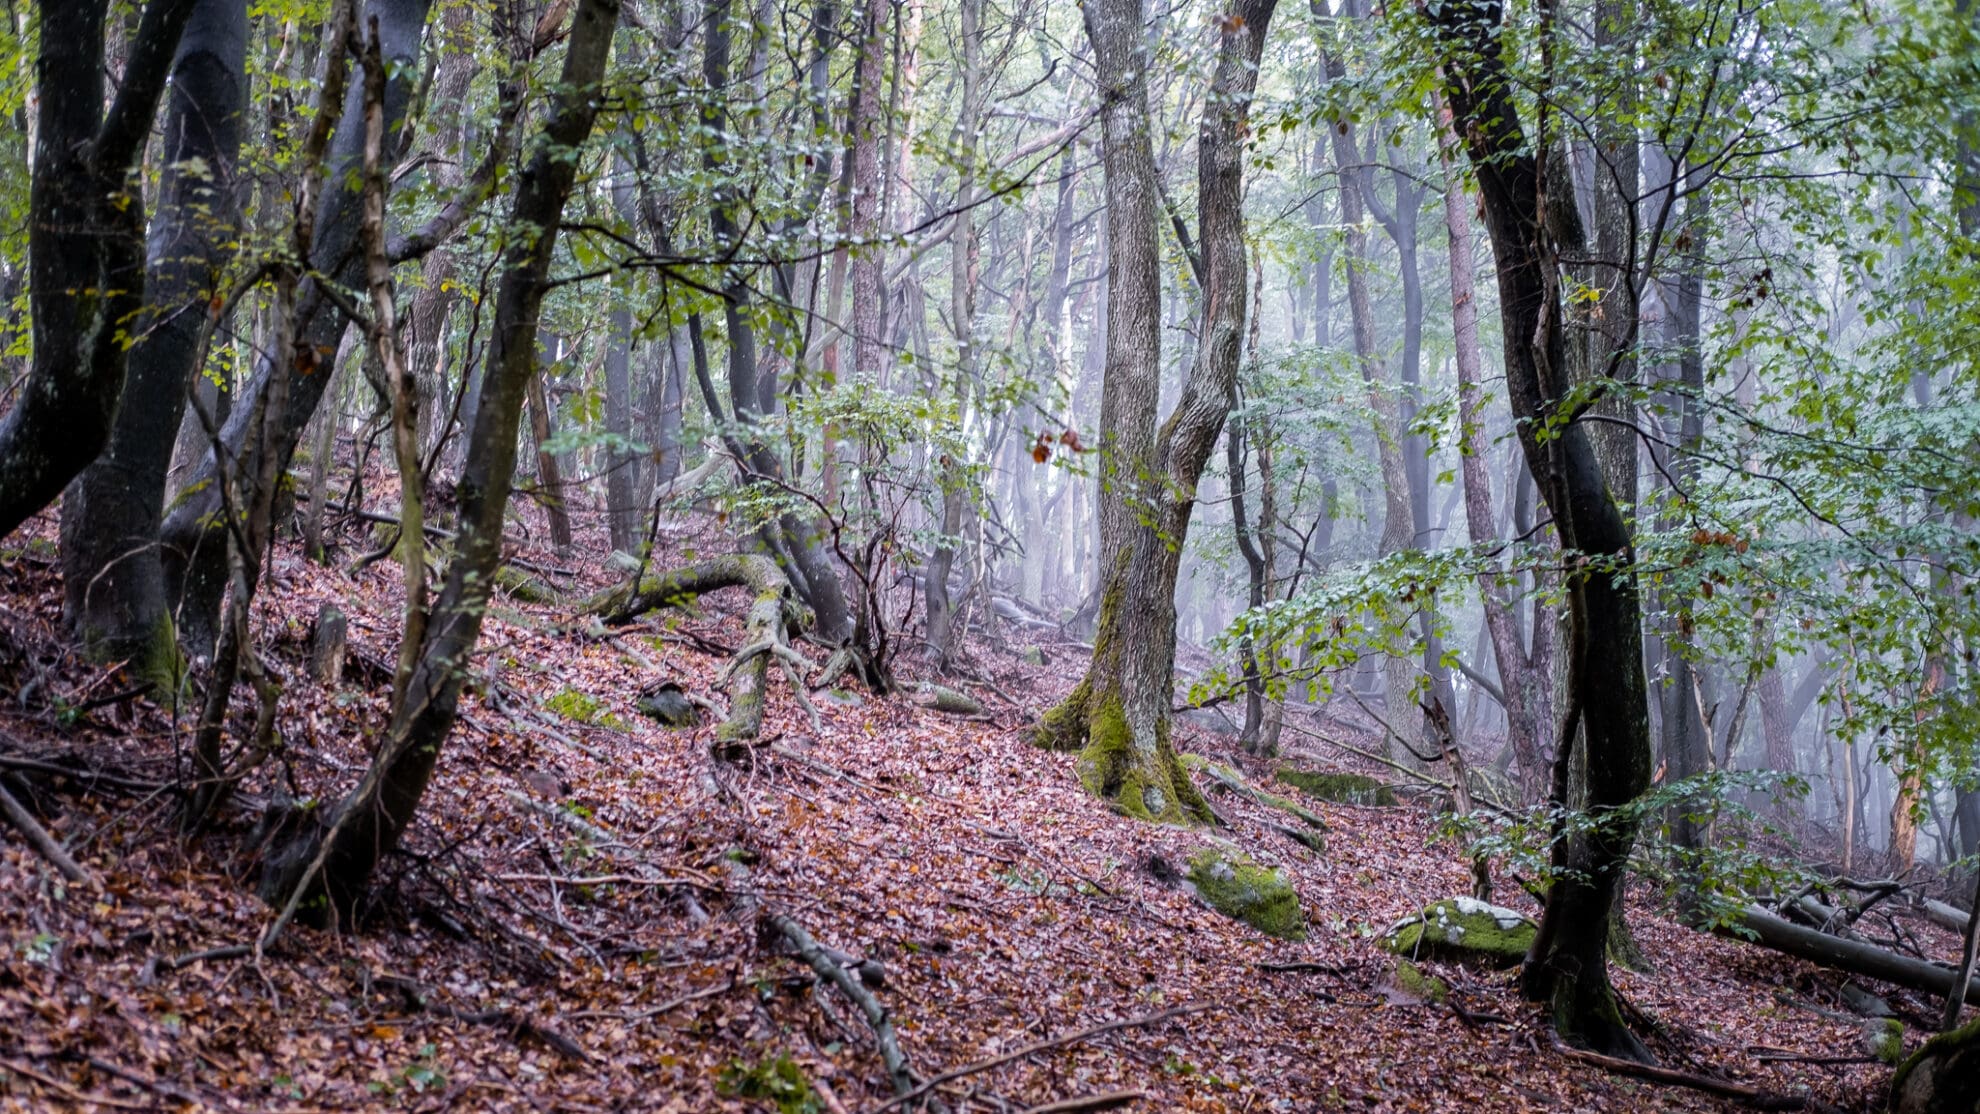 Ein Baum steht im Licht im Nebel im Wald, der Waldboden ist mit Laub und altem Holz bedeckt